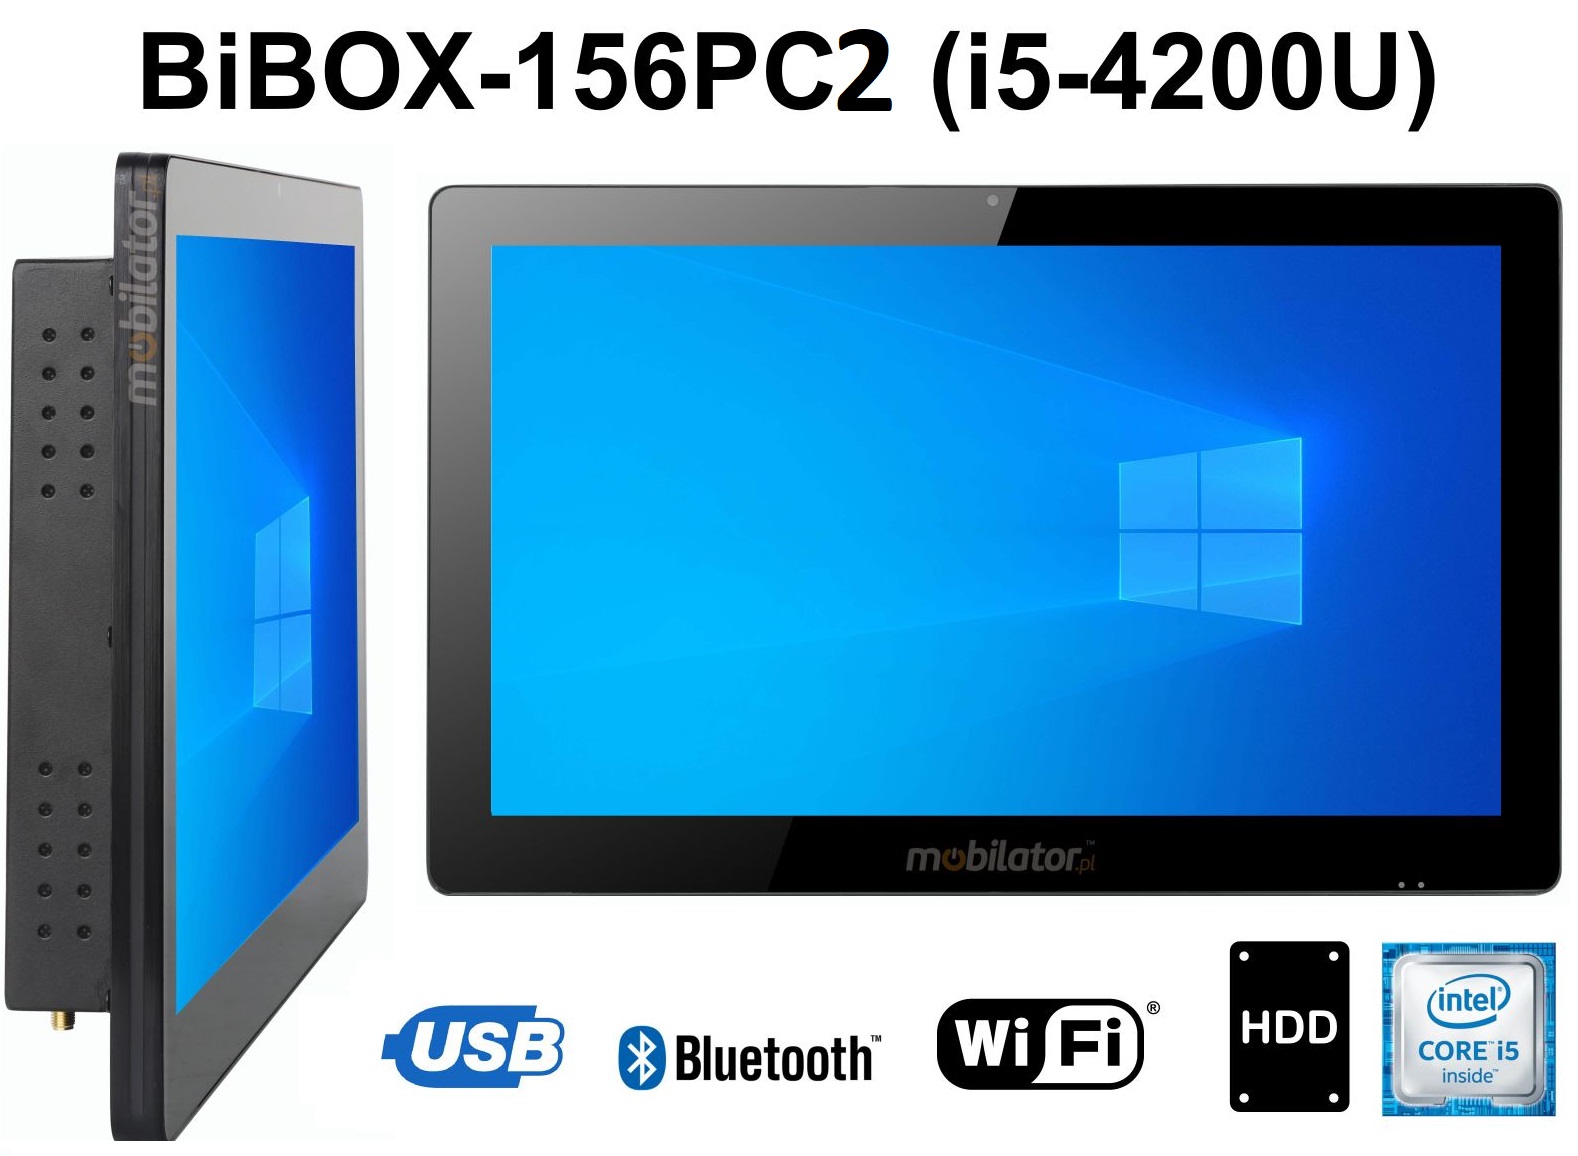 BIBOX-156PC2 Wytrzymay wydajny i dobry  komputer panelowy